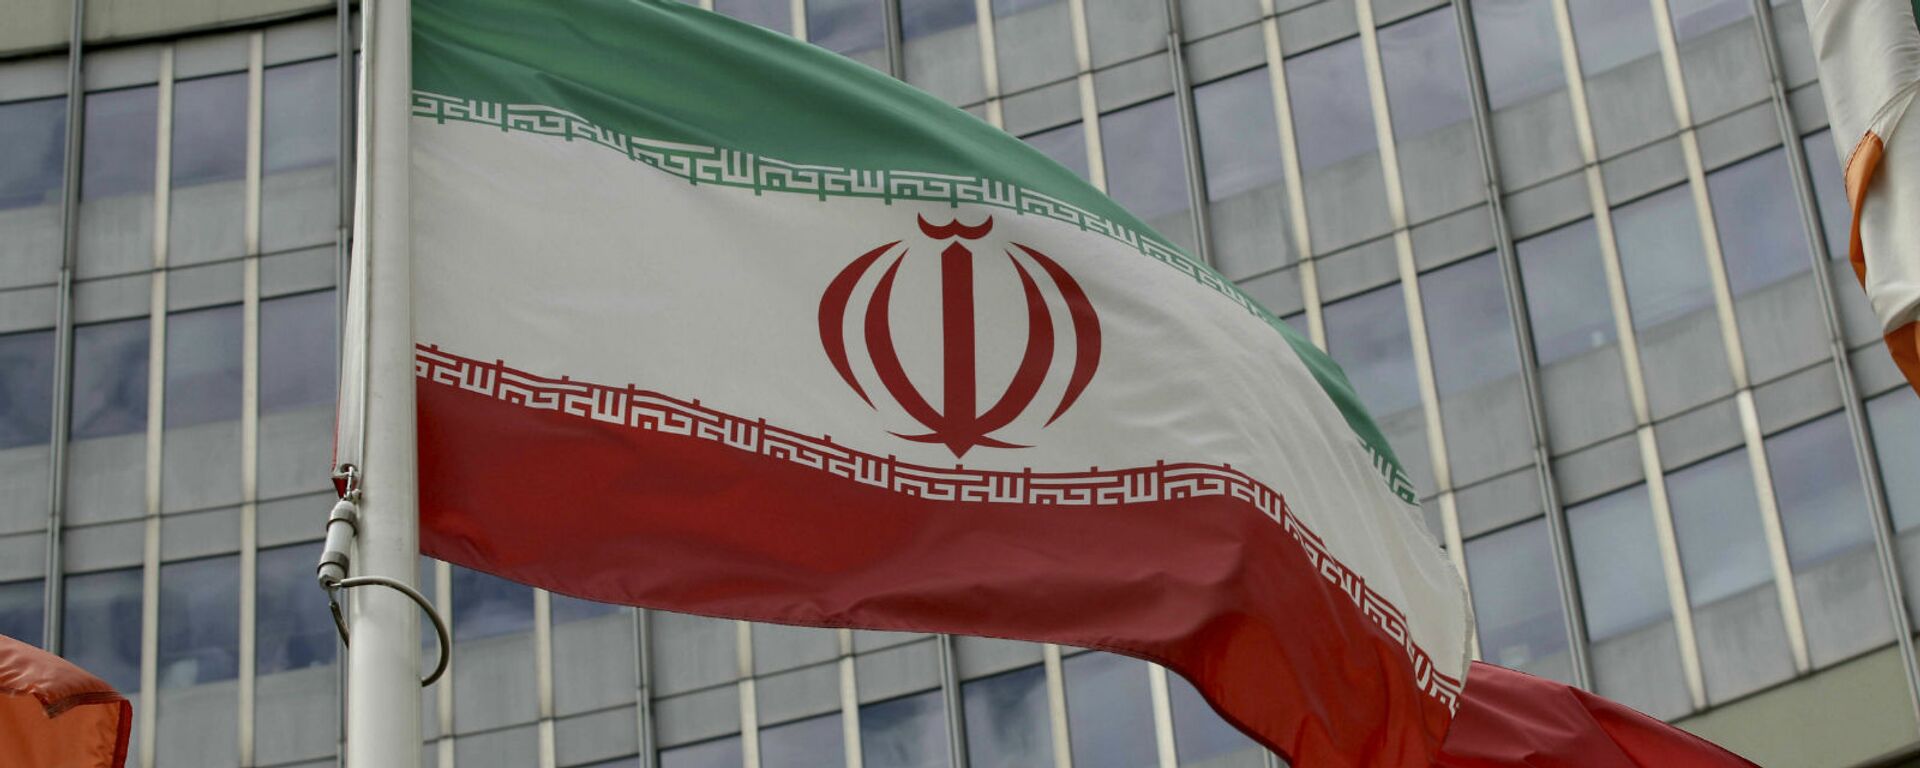 Иранский флаг развевается у здания ООН, в котором находится офис Международного агентства по атомной энергии МАГАТЭ (10 июля 2019). Вена - Sputnik Արմենիա, 1920, 18.04.2021